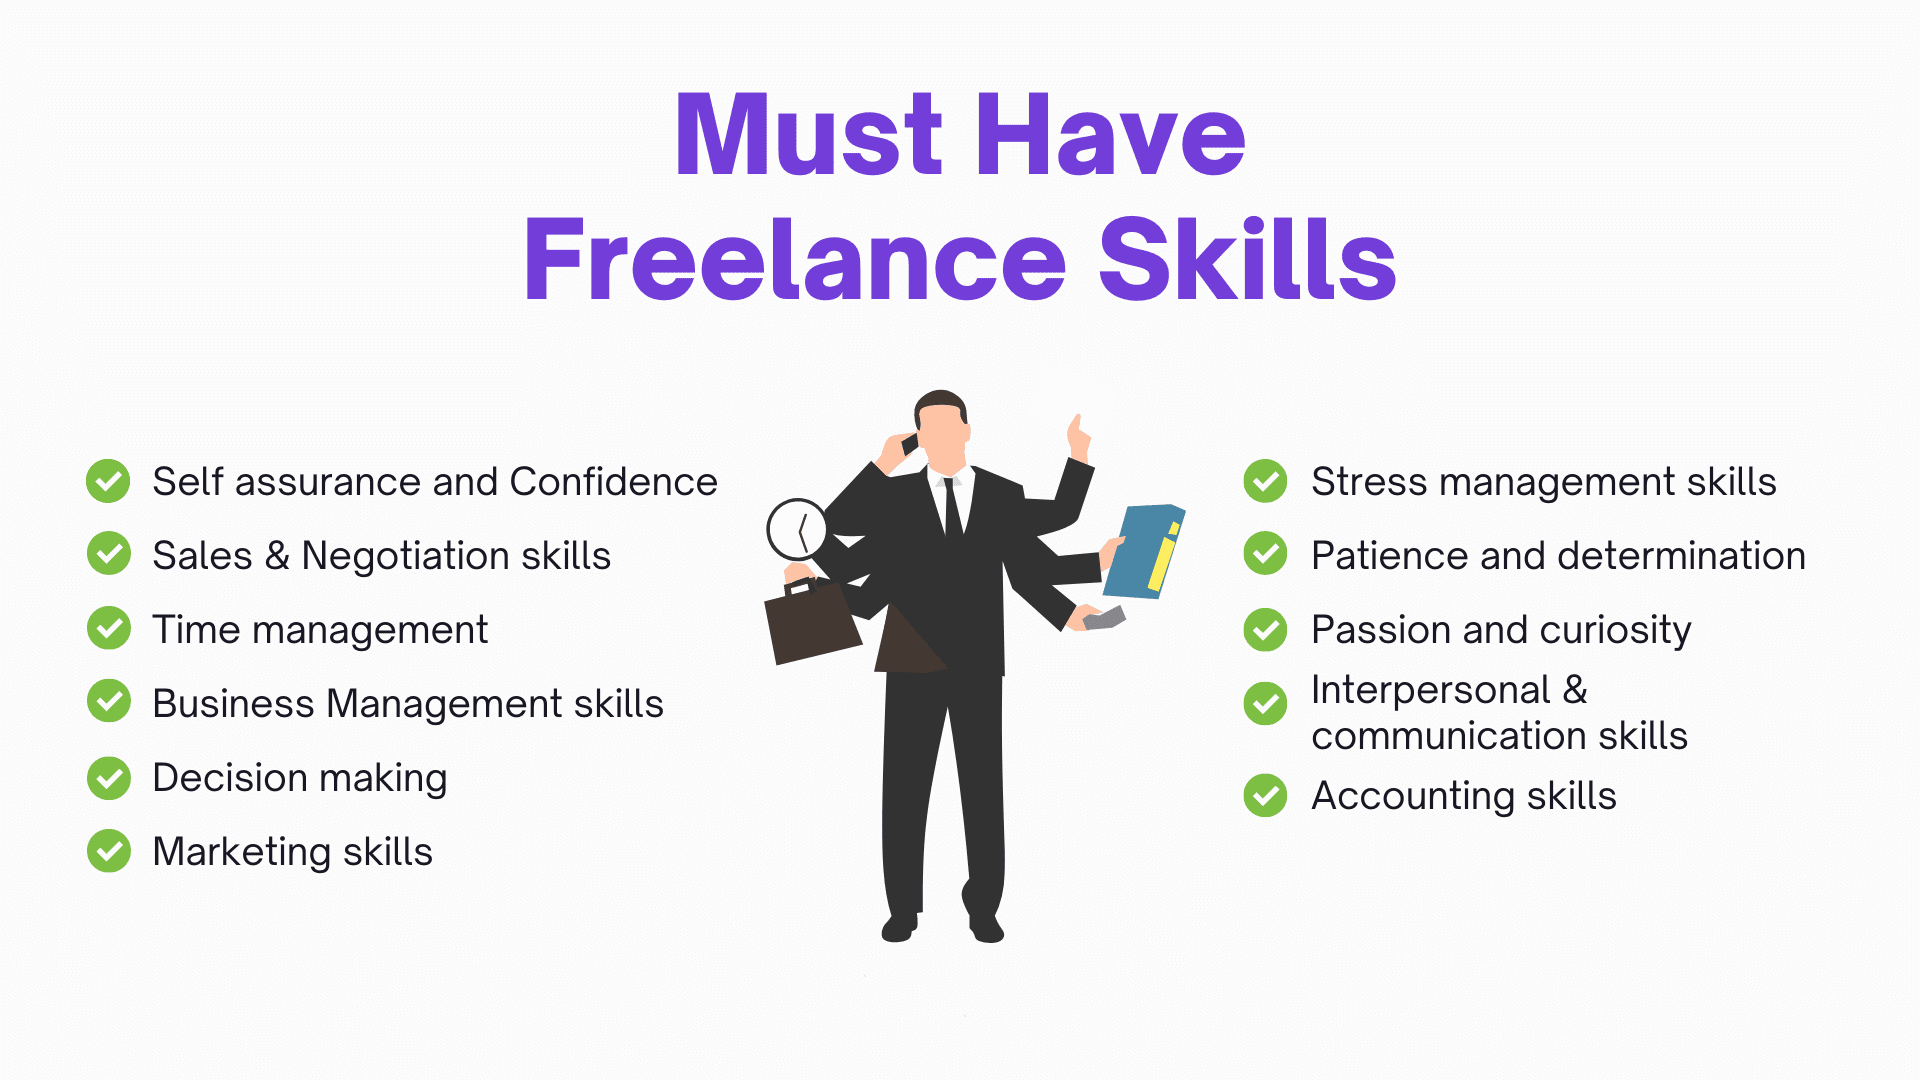 Najważniejsze umiejętności, jakie musi posiadać freelancer